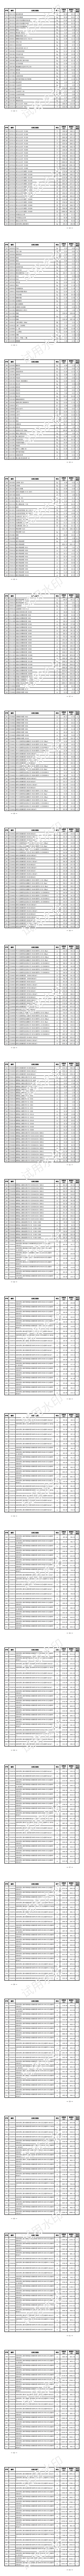 上海水务工程价格信息（2023年4月第三期）_02.png